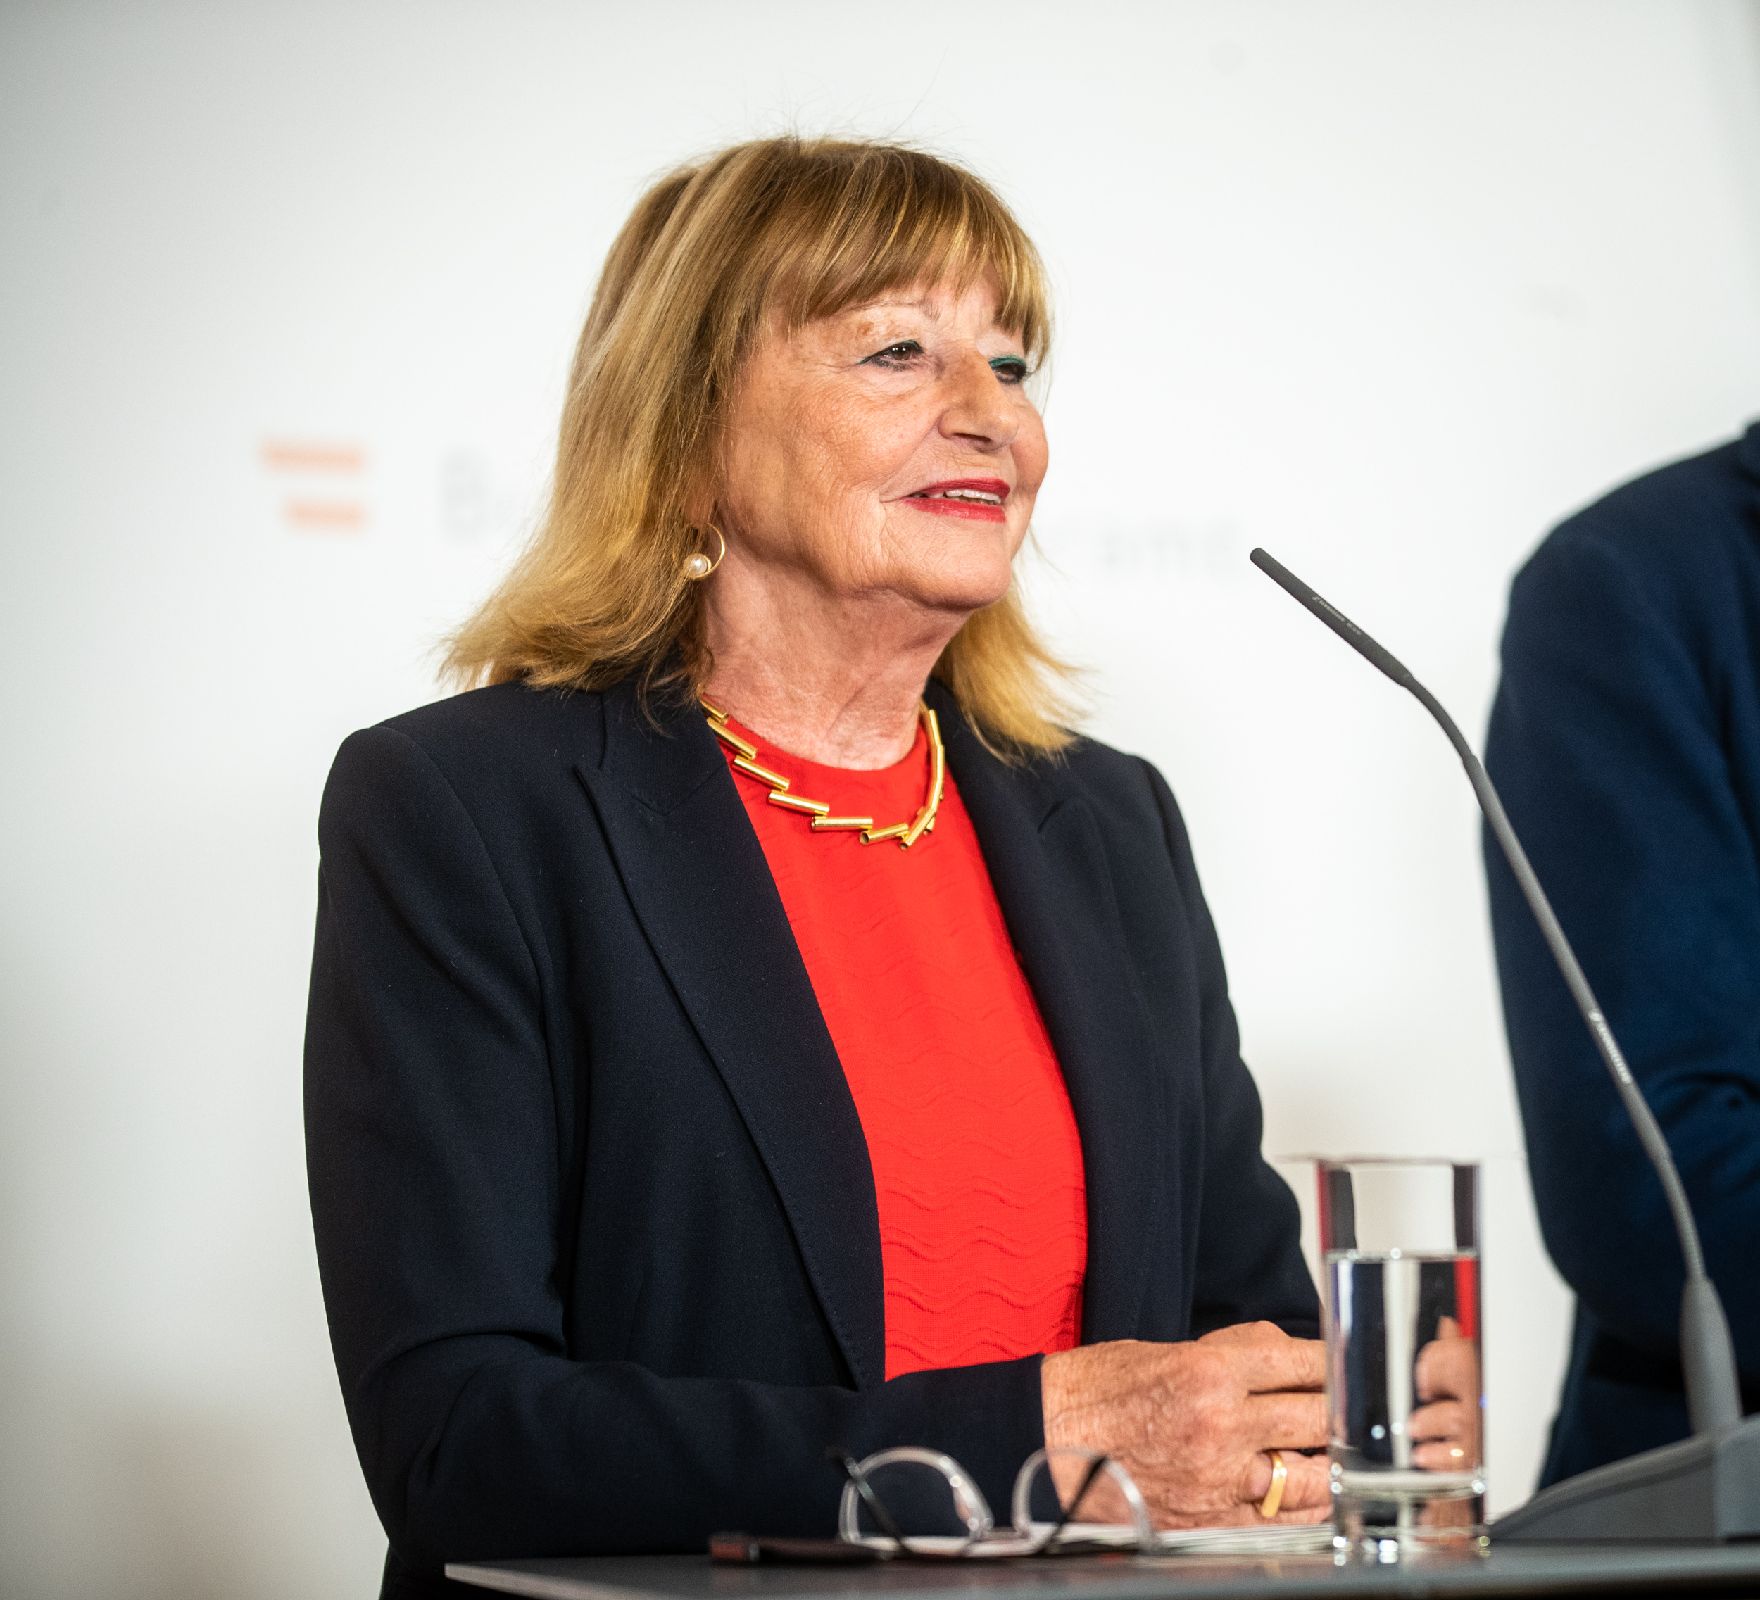 Am 20. Oktober 2022 fand eine Pressekonferenz zum Thema "Gesund aus der Krise" statt. Im Bild die Präsidentin des Berufsverbandes österreichischer PsychologInnen Beate Wimmer-Puchinger.